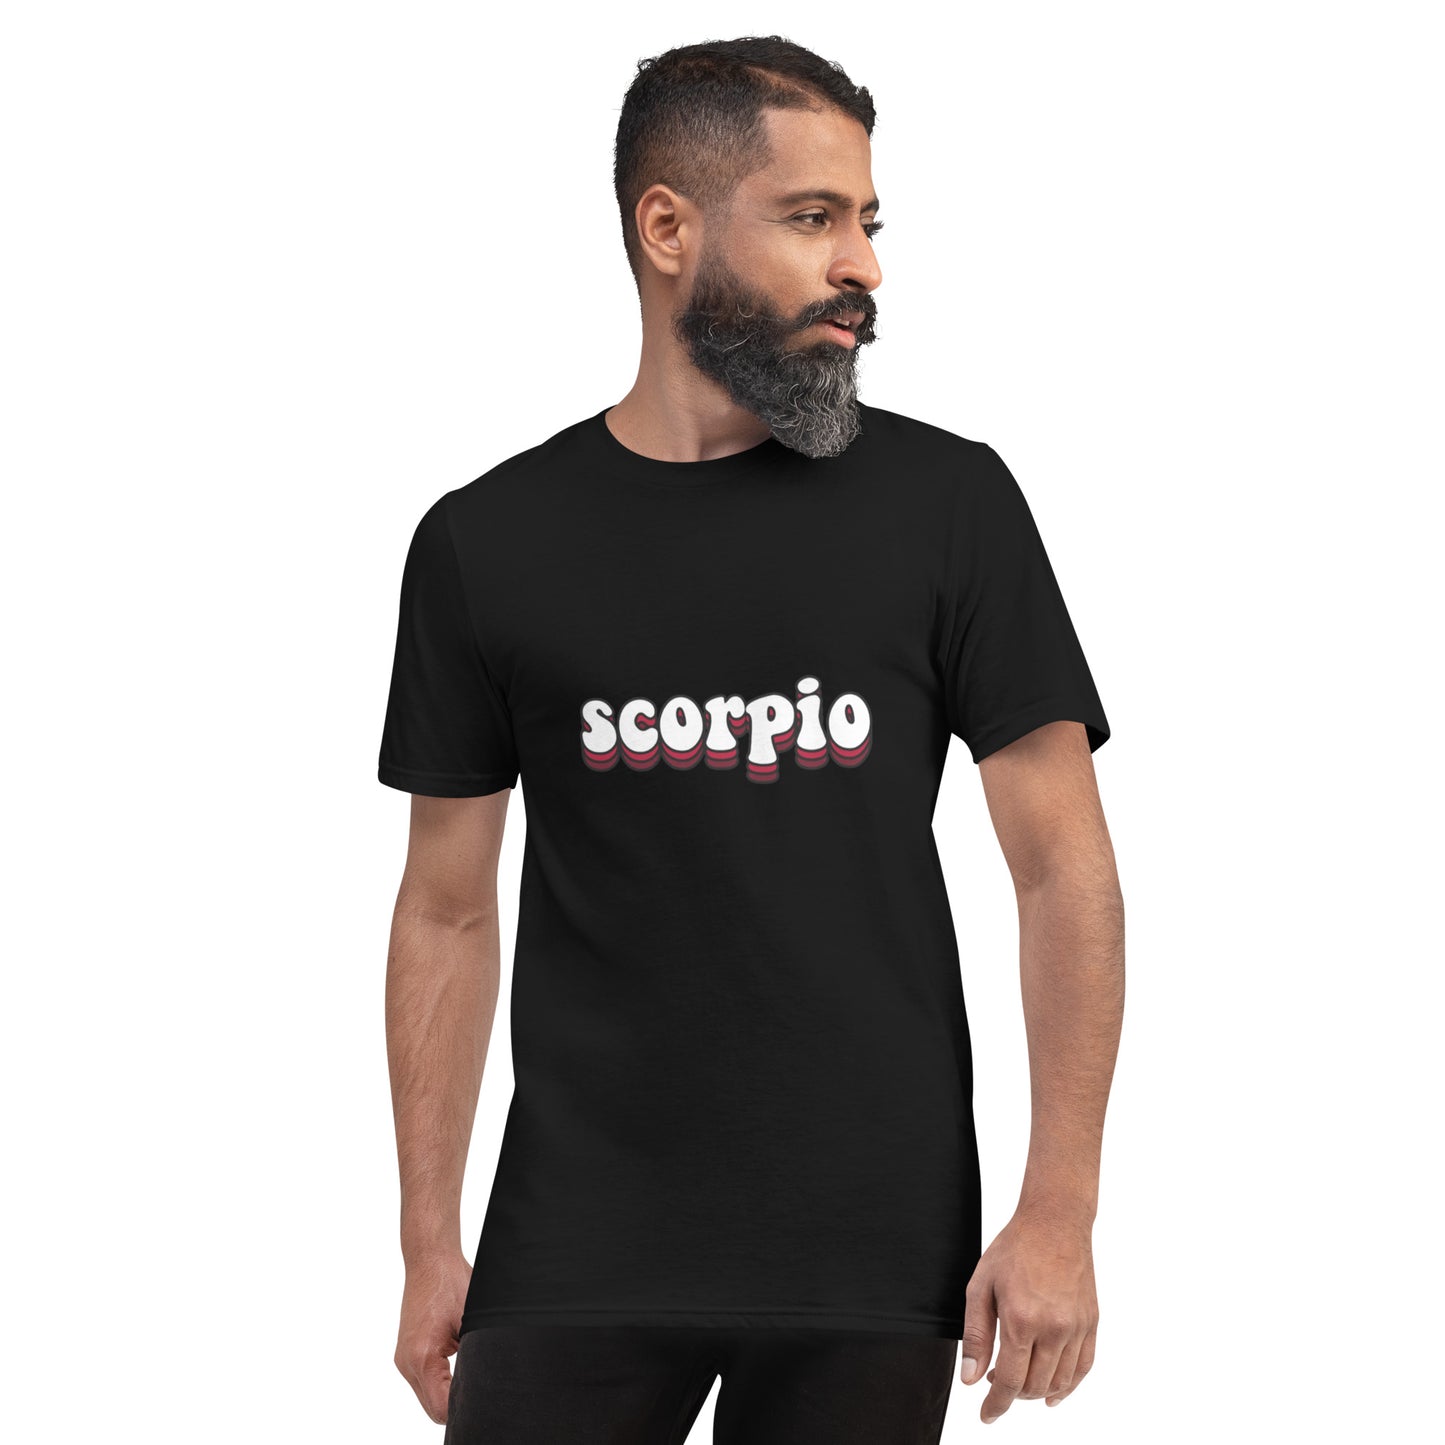 Scorpio Short-Sleeve T-Shirt